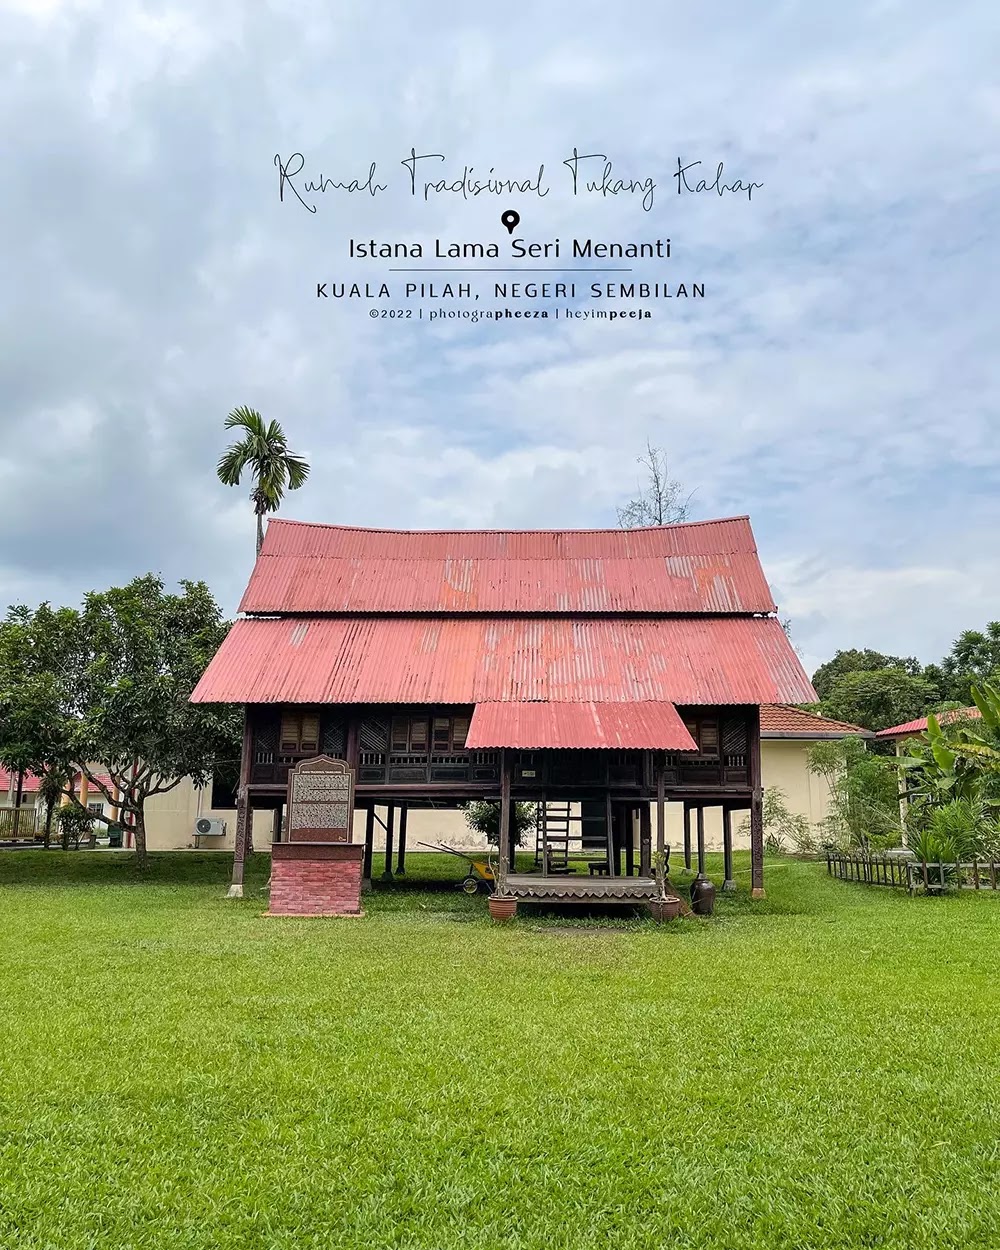 Istana Lama Seri Menanti Kuala Pilah Negeri Sembilan-Rumah Tradisional Tukang Kahar